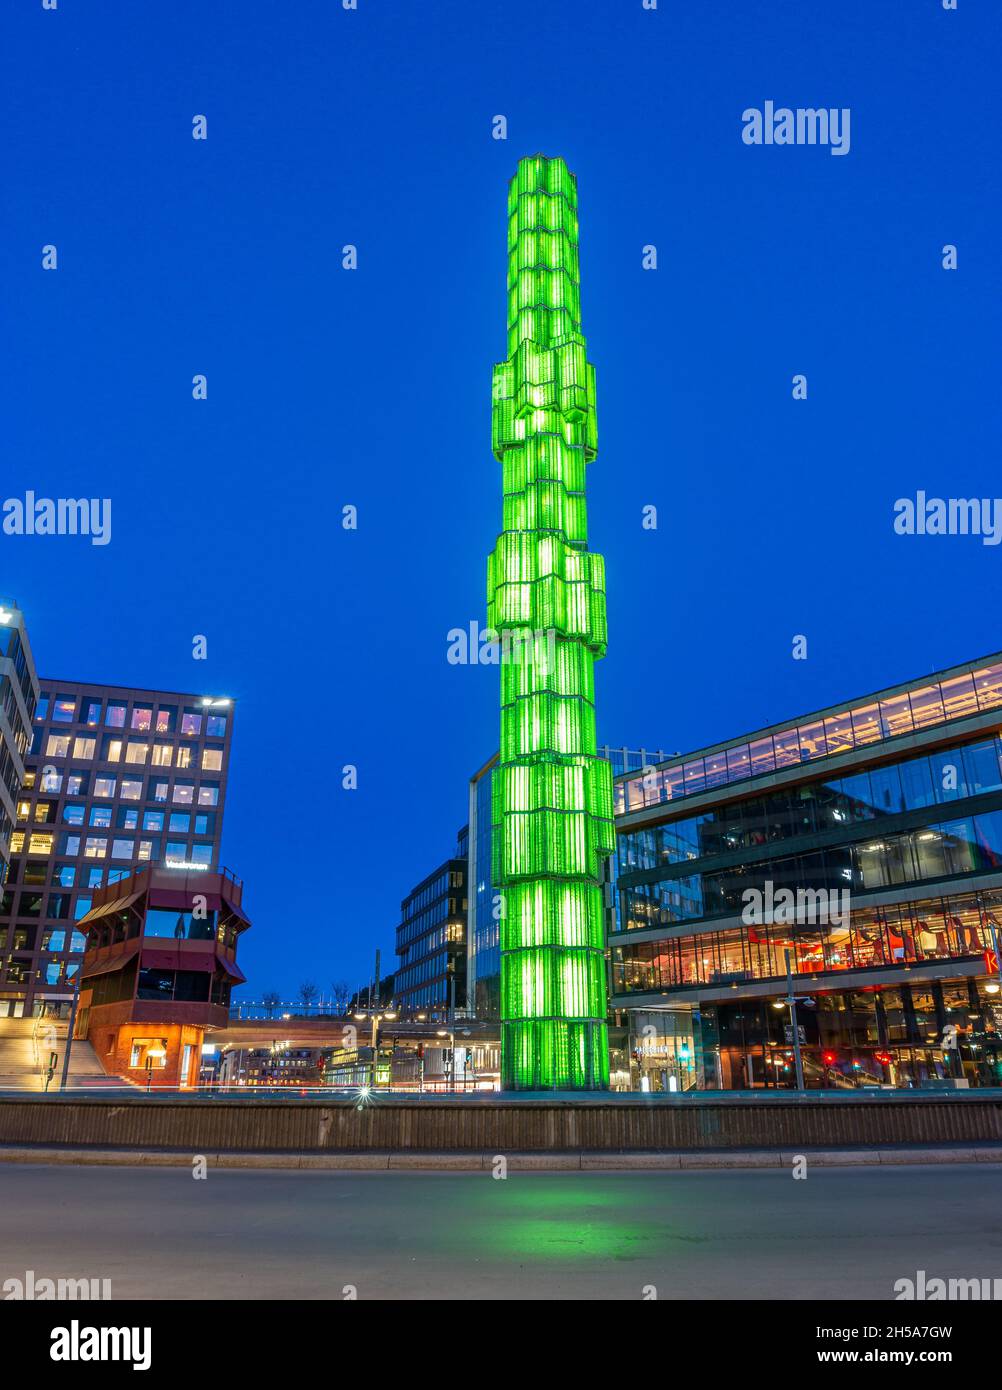 Estocolmo, Suecia - Abril 10: Torre de cristal iluminada de color verde en la plaza Sergel en el centro Foto de stock